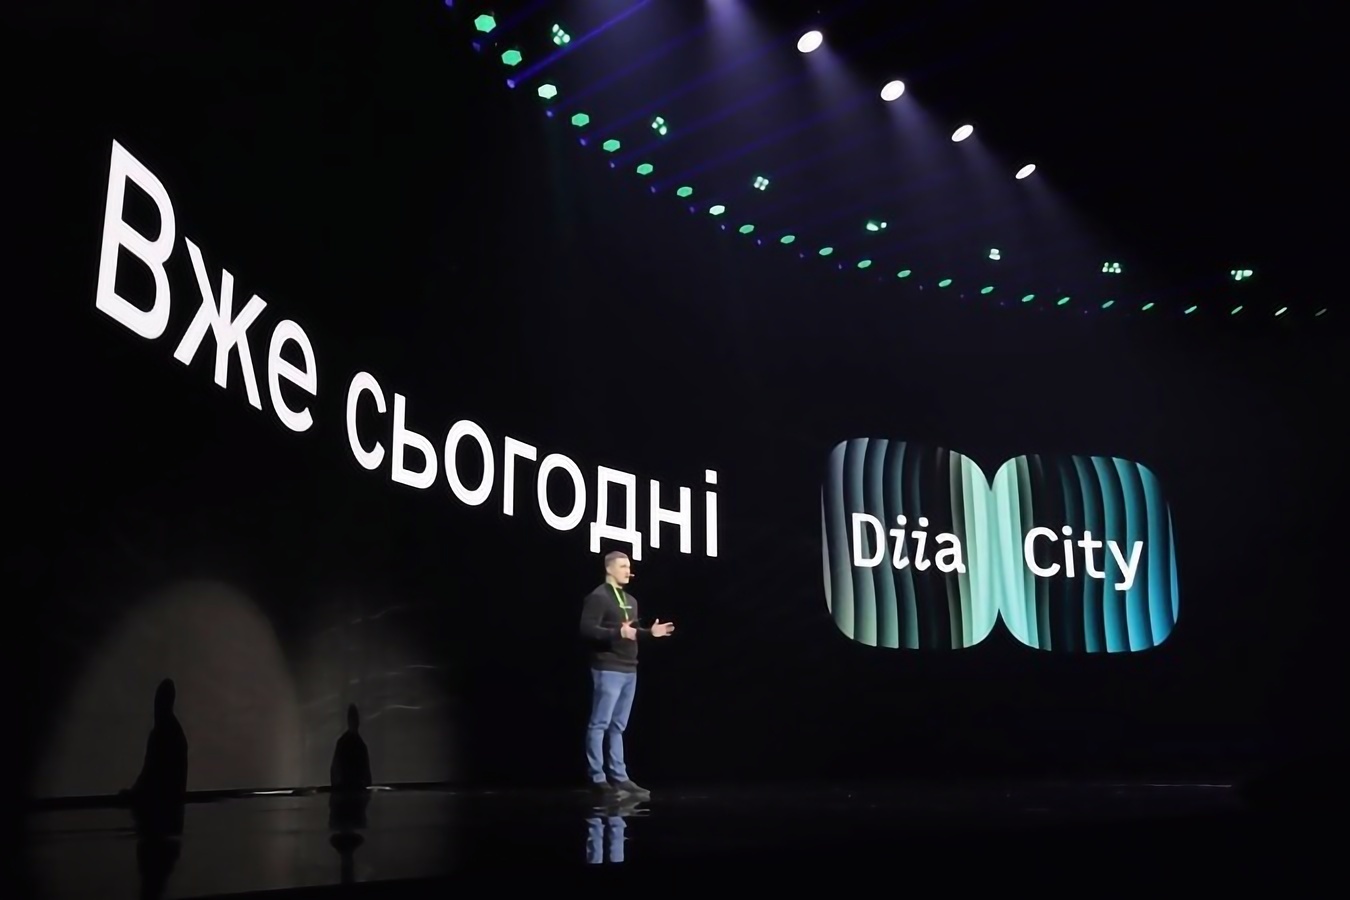 Дія City vs ПВТ. Белорусские IT-инвесторы массово отдаются украинскому спецрежиму